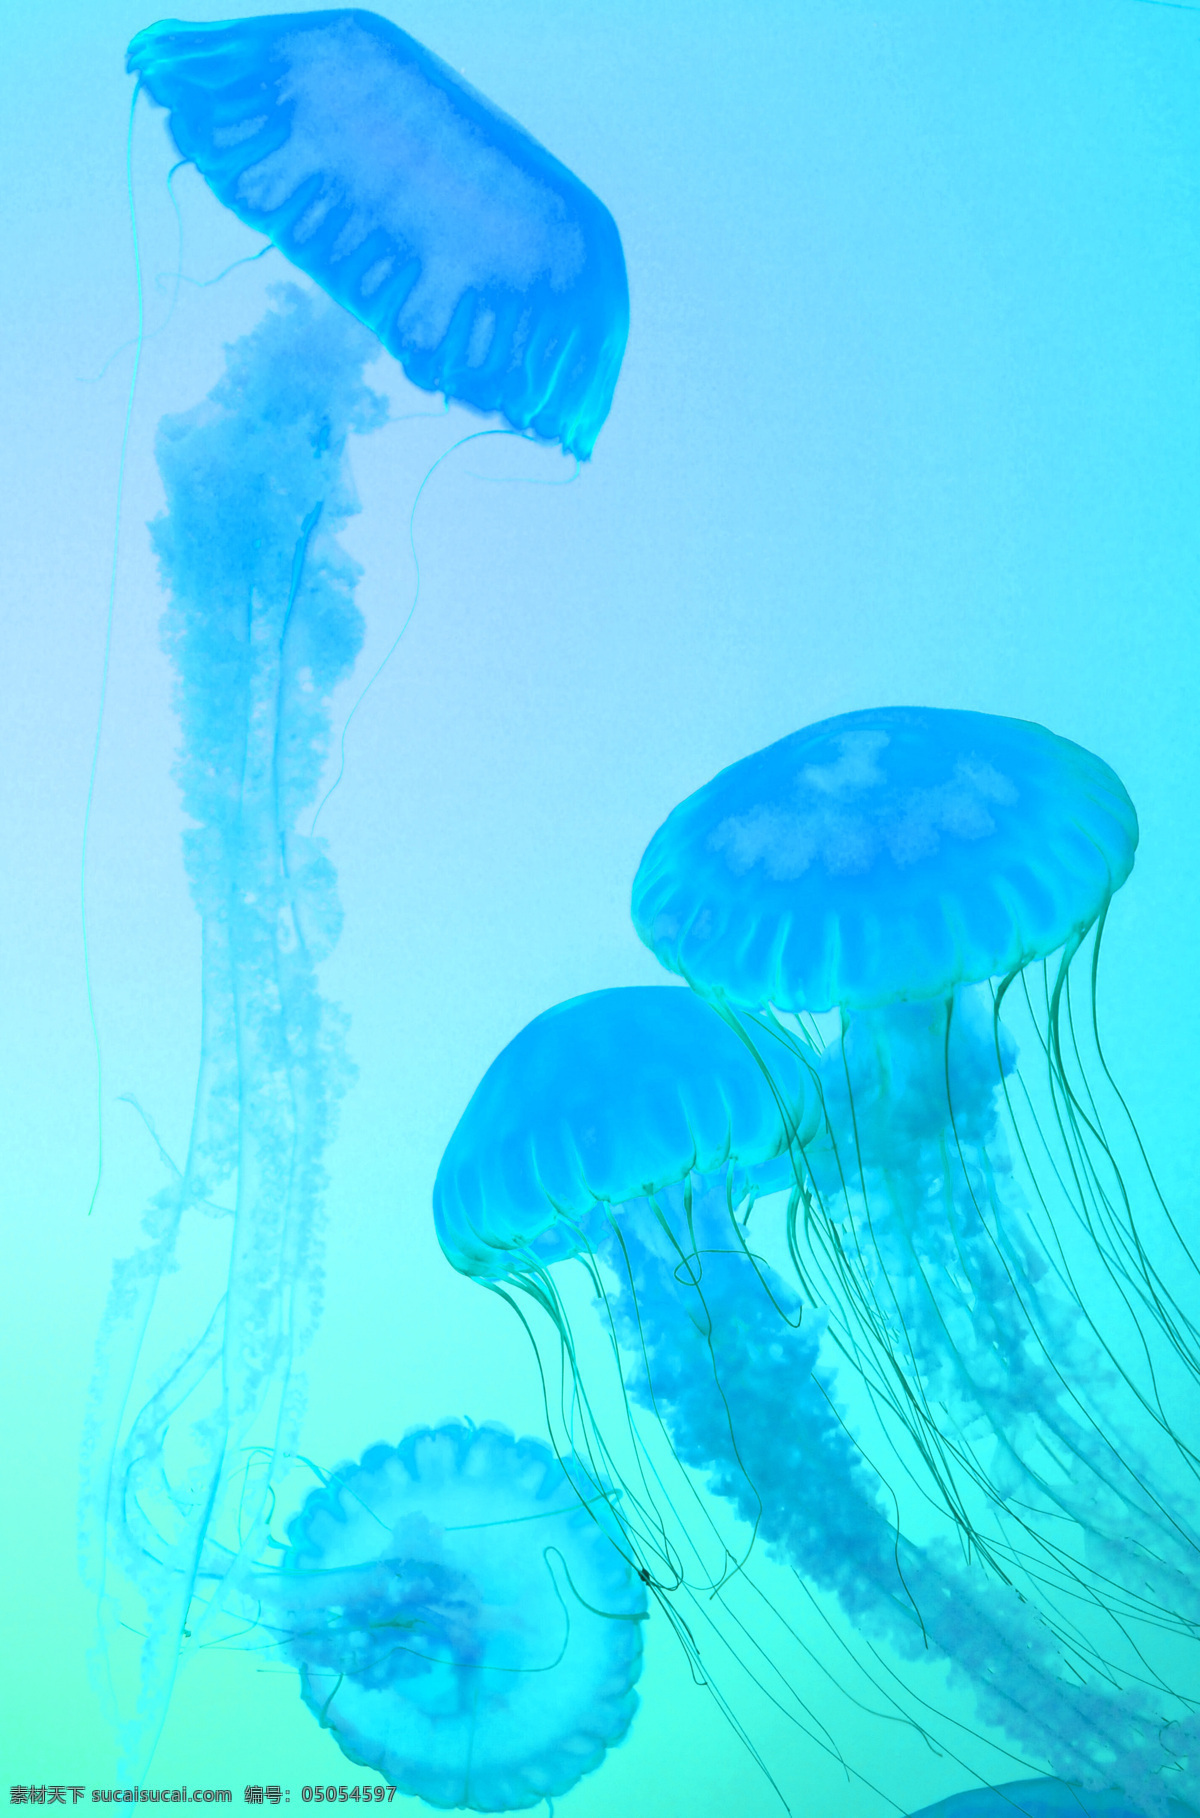 水母 蓝色 大海 浪漫 高清图片 背景 生物世界 海洋生物